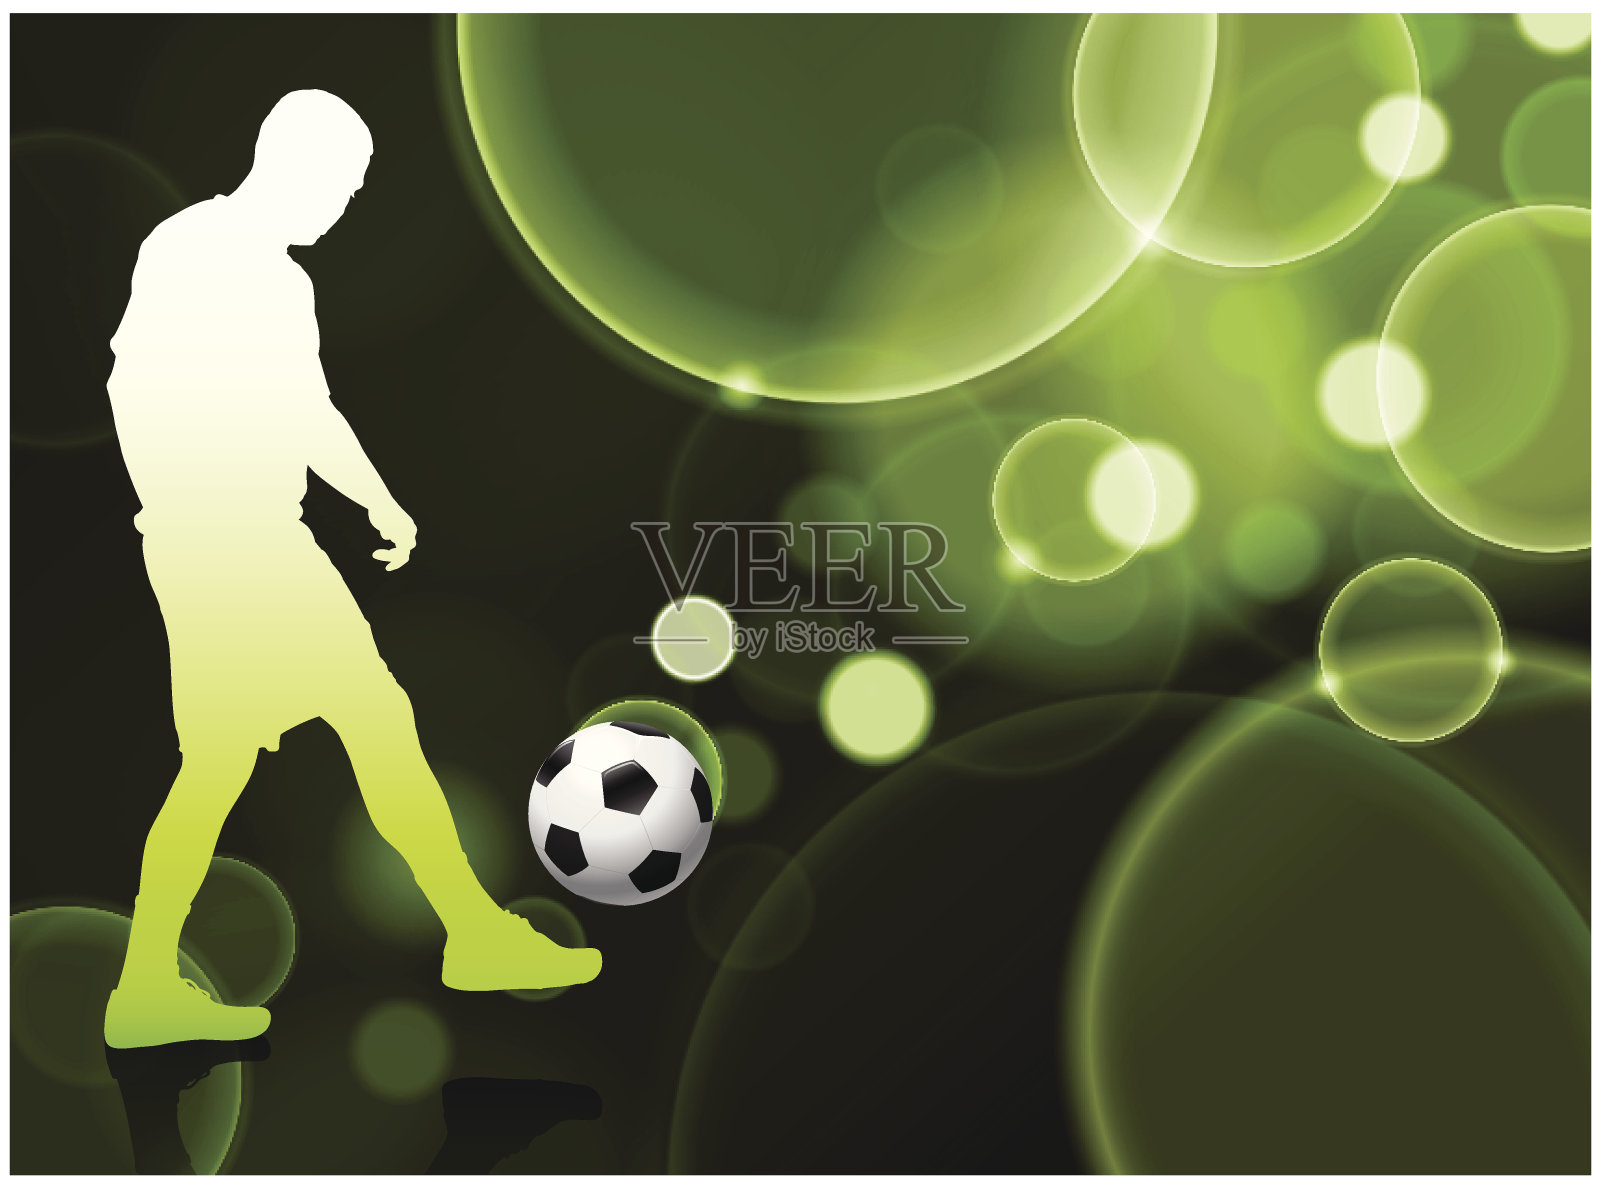 足球运动员在泡沫绿色背景插画图片素材